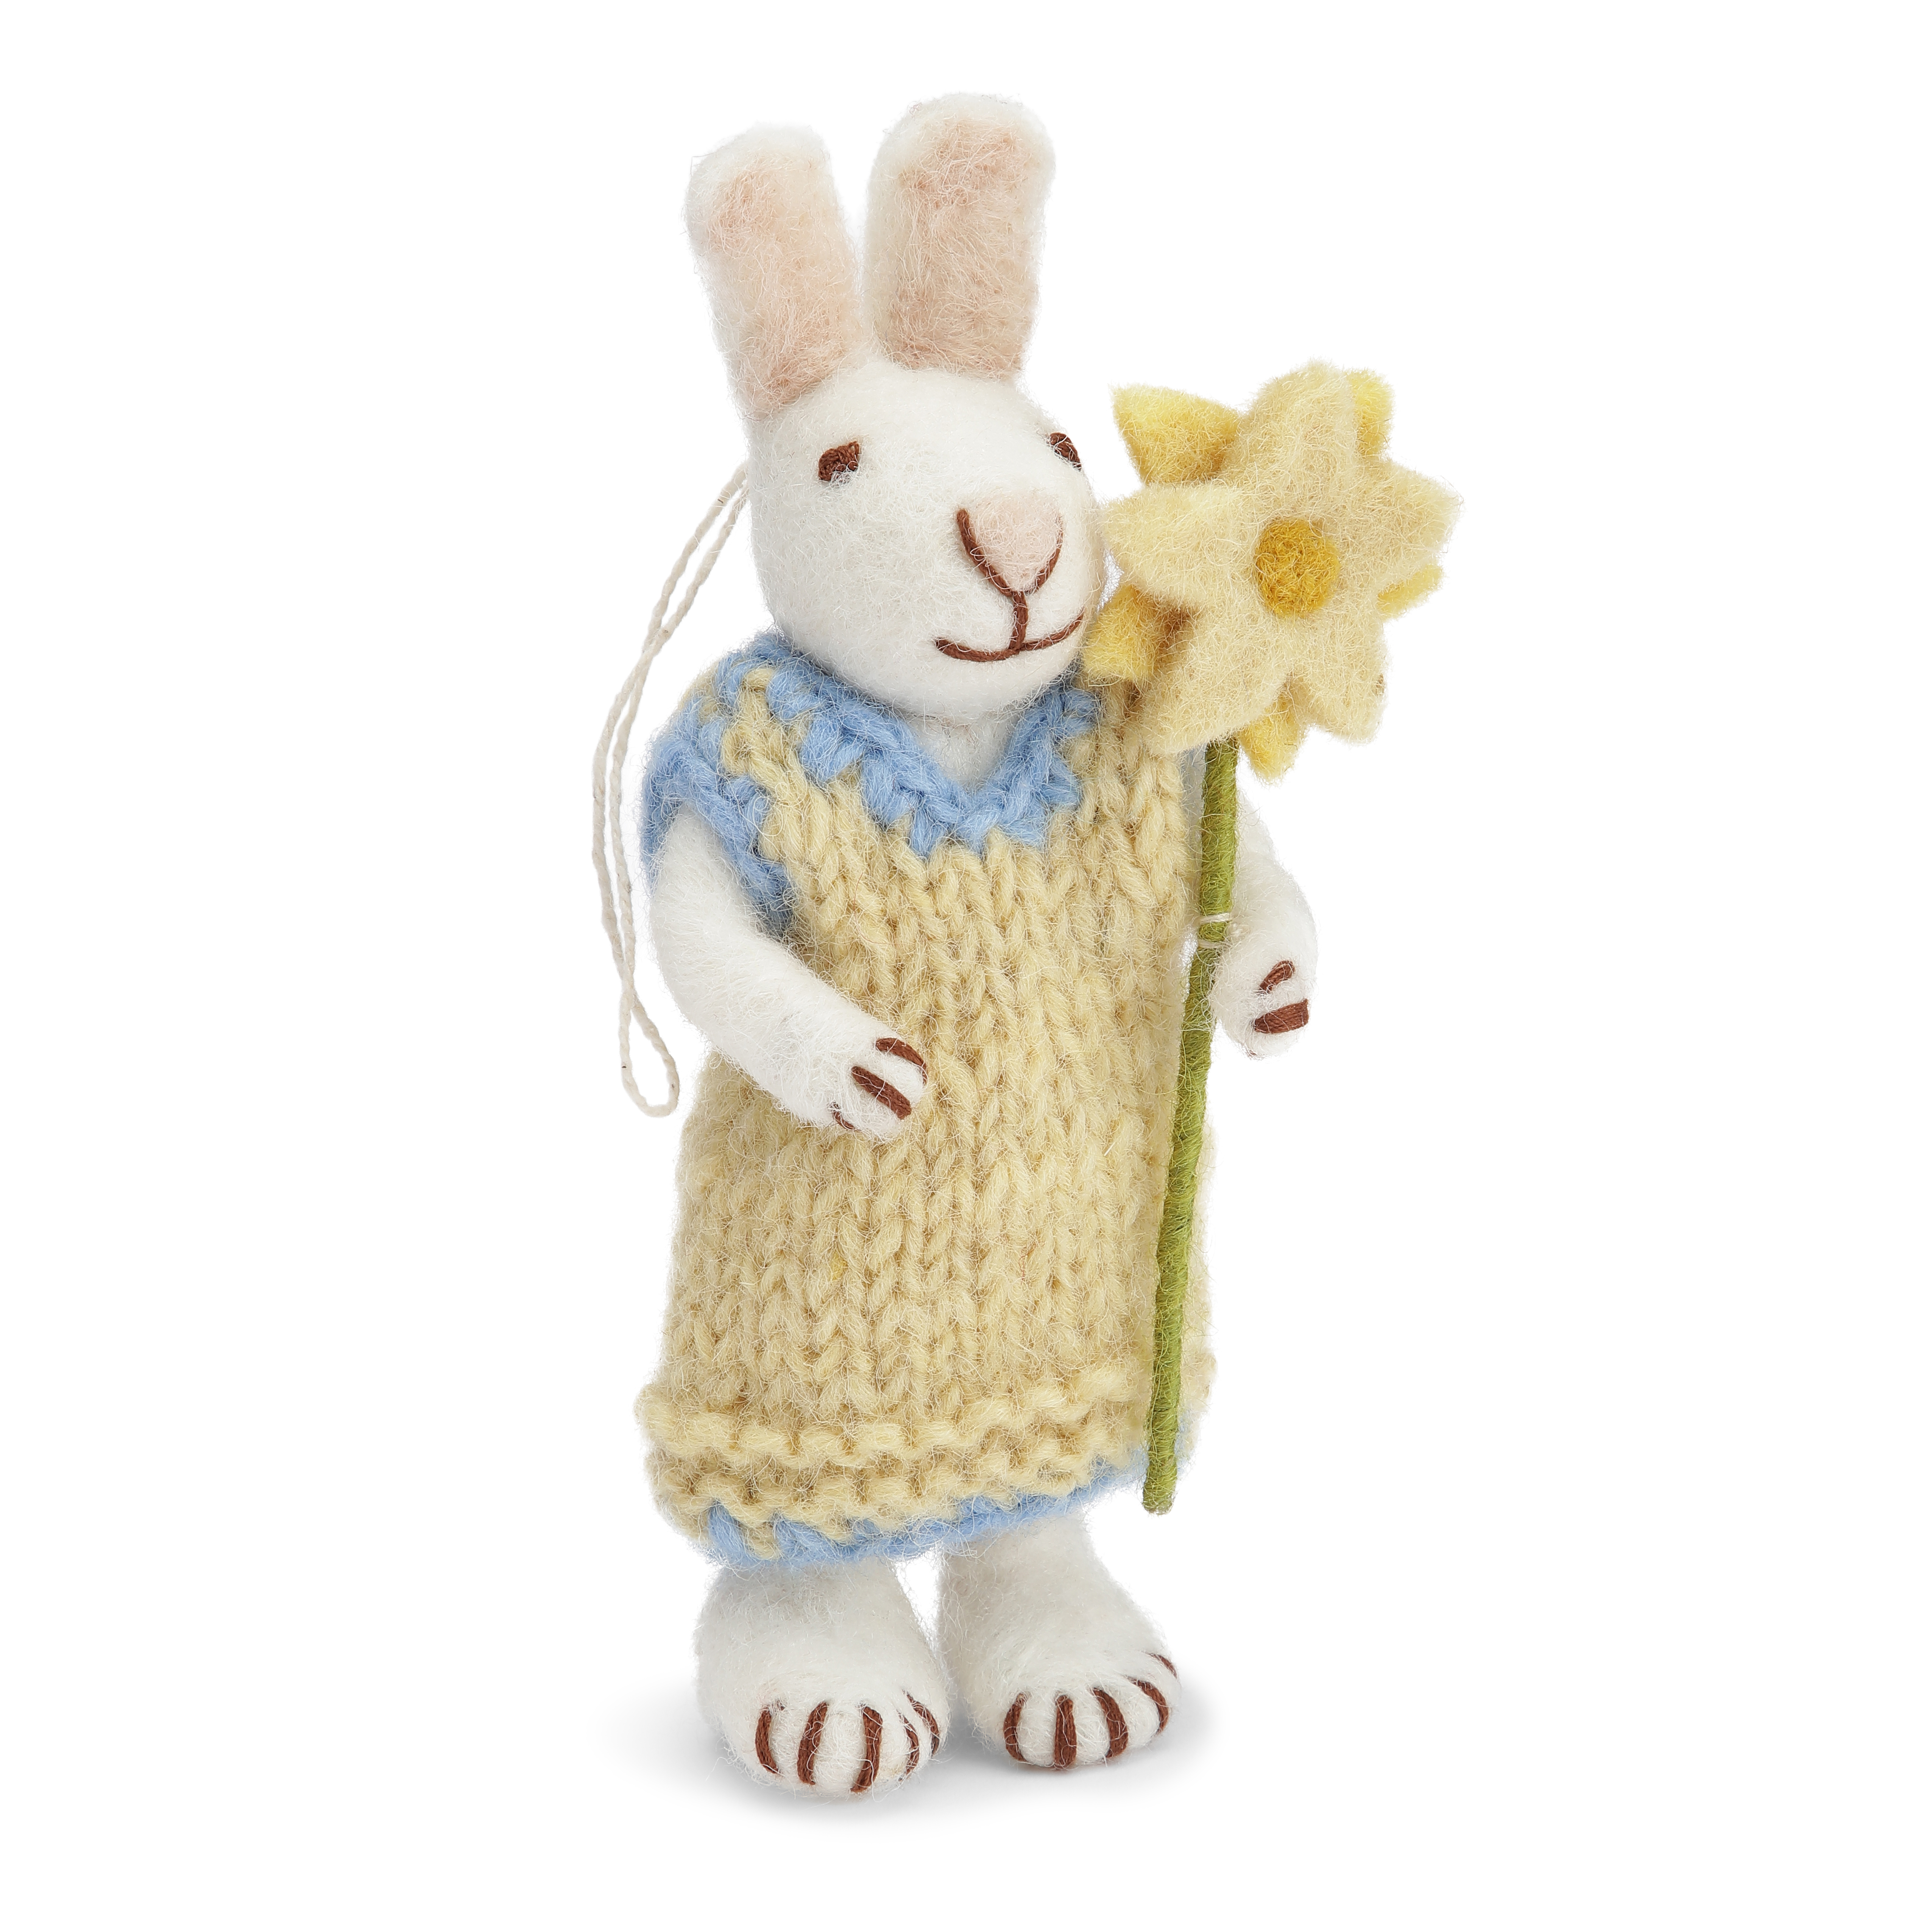 Gry & Sif weißes handgefilztes Hasenmädchen mit gelben Kleid und Blume